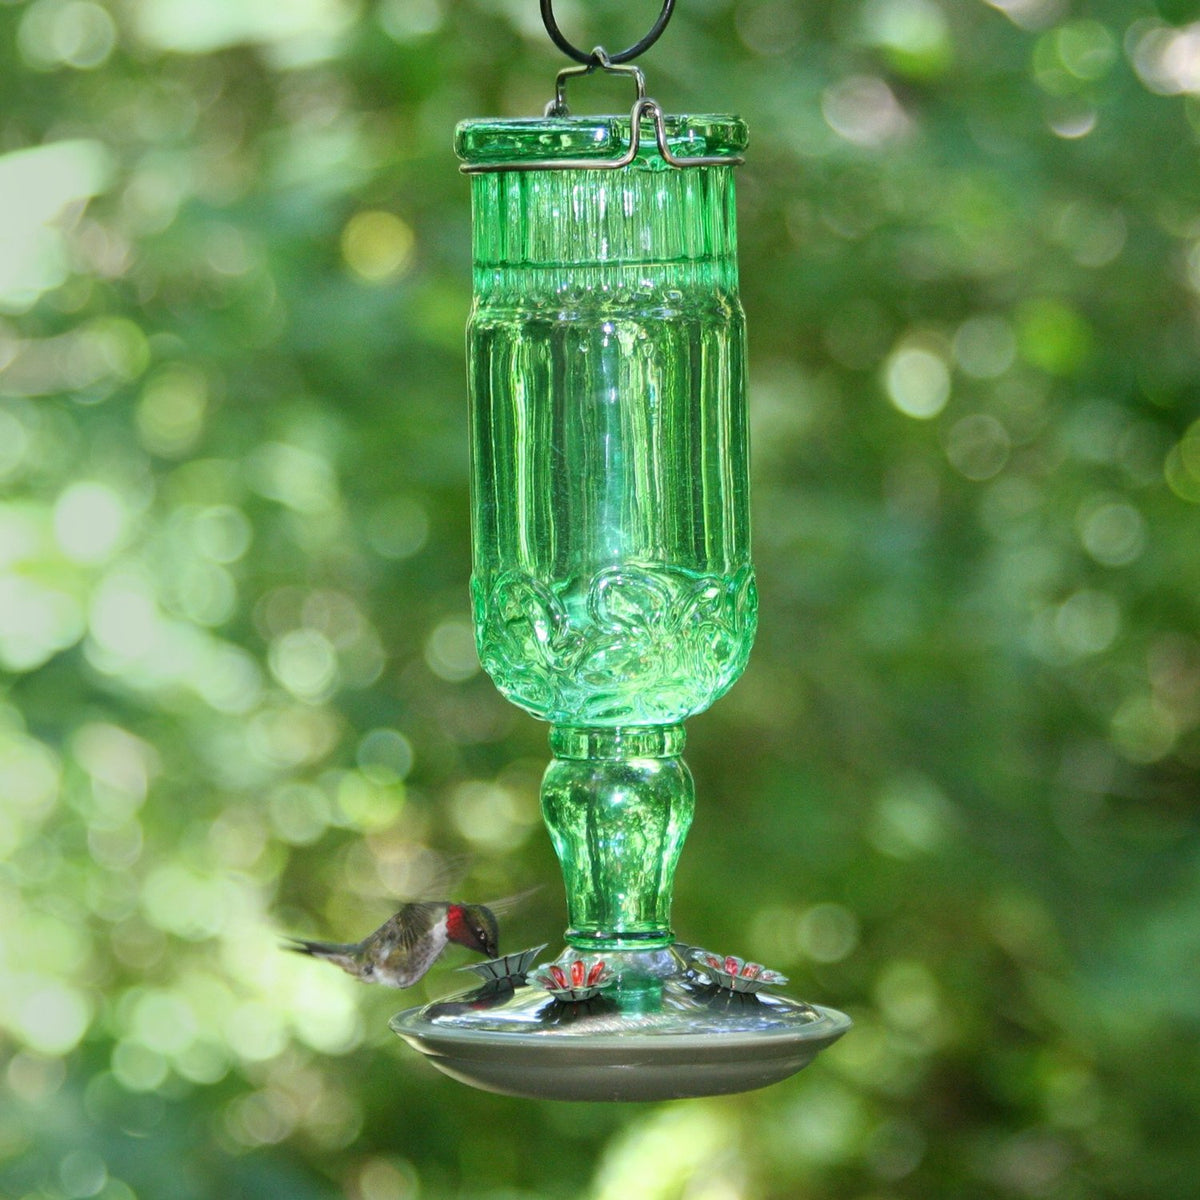 Perky Pet 8120-2 Antique Bottle Hummingbird Bird Feeder, 24 Oz, Glass, Green